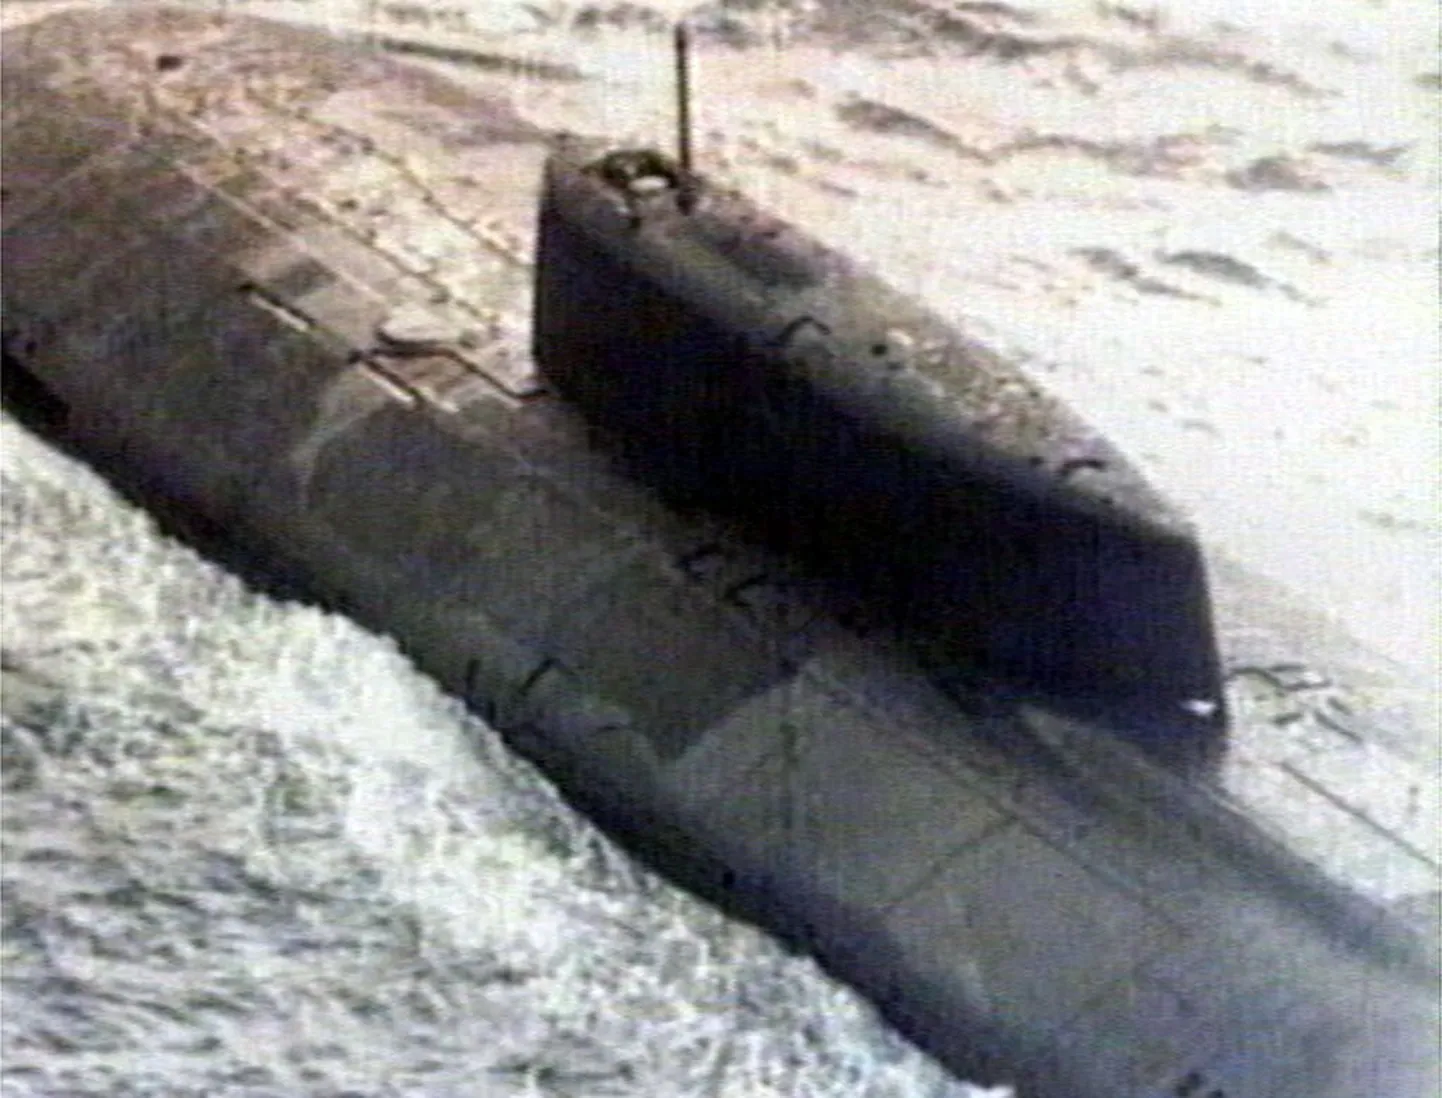 Атомная подводная лодка "Курск" затонула 12 августа 2000 года в Баренцевом море. Все 118 членов экипажа, находившиеся на борту, погибли.